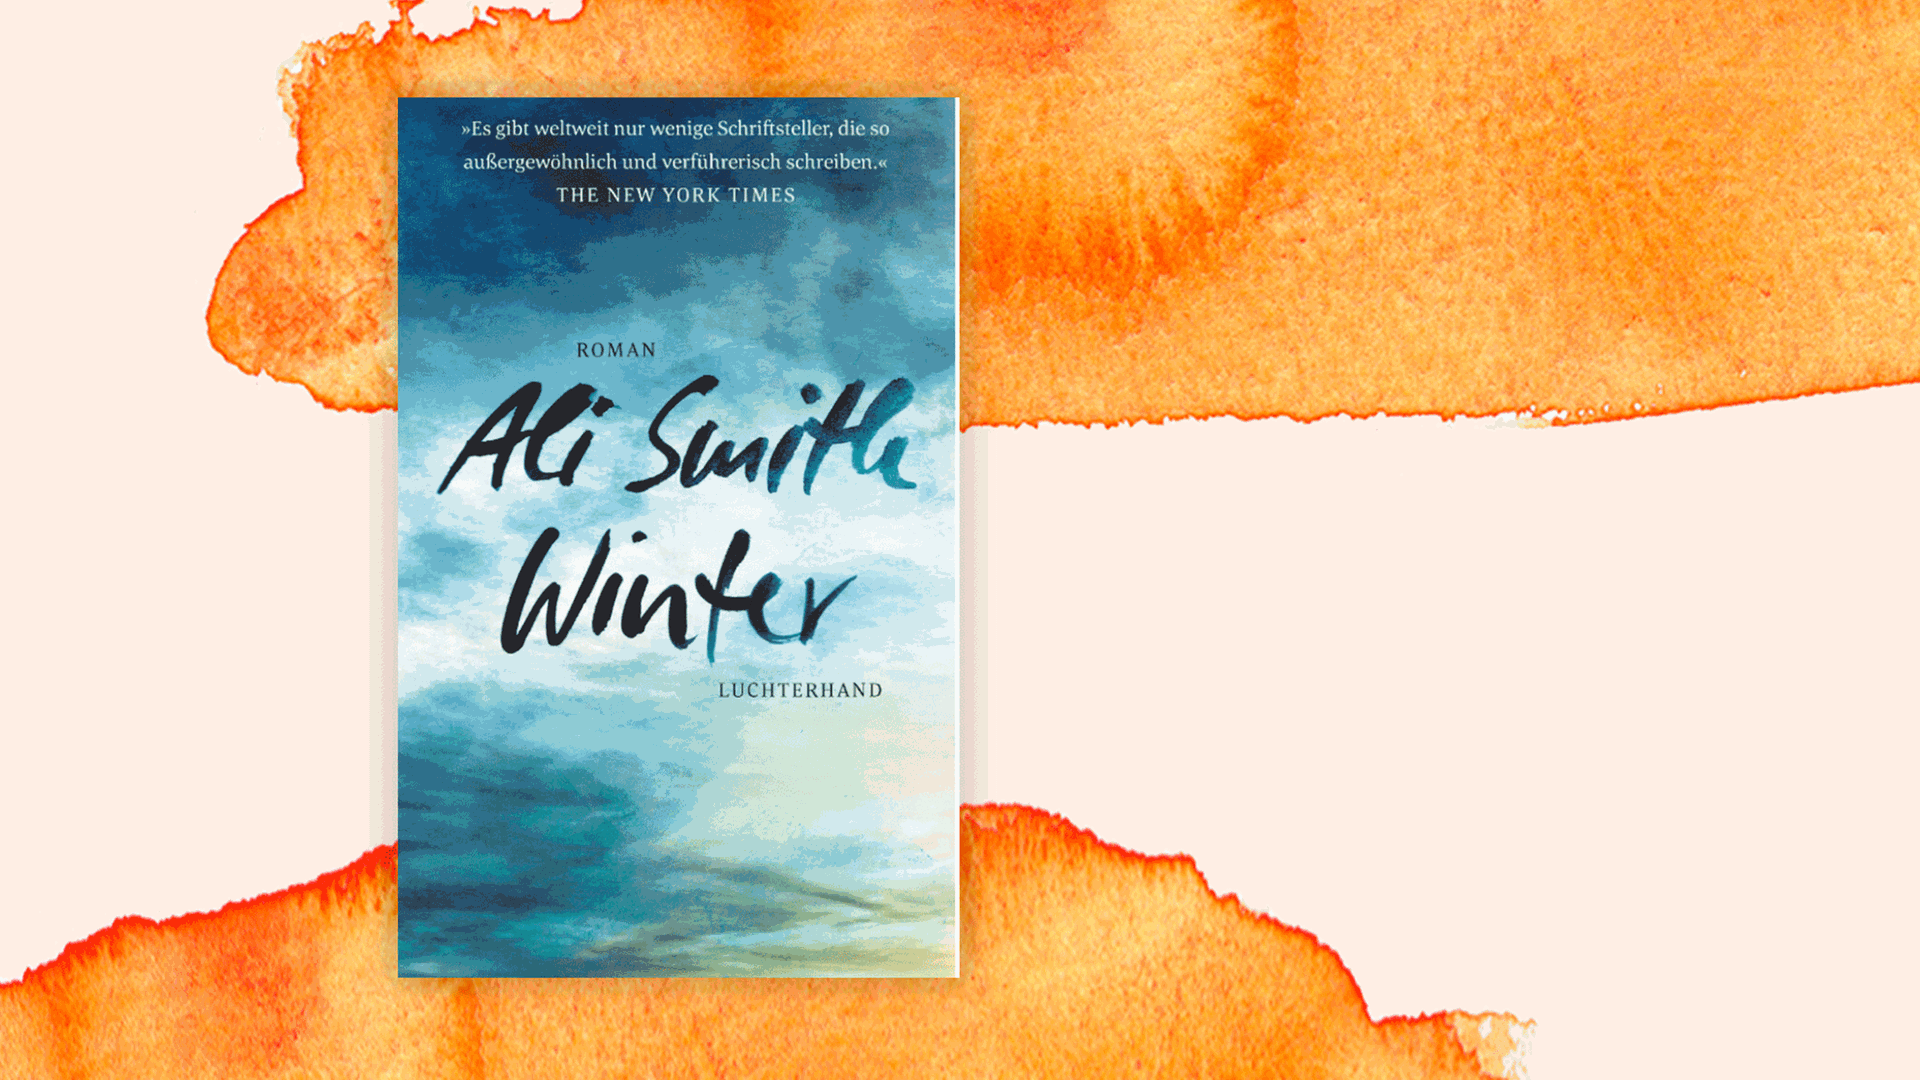 Cover des Buchs "Winter" von Ali Smith.